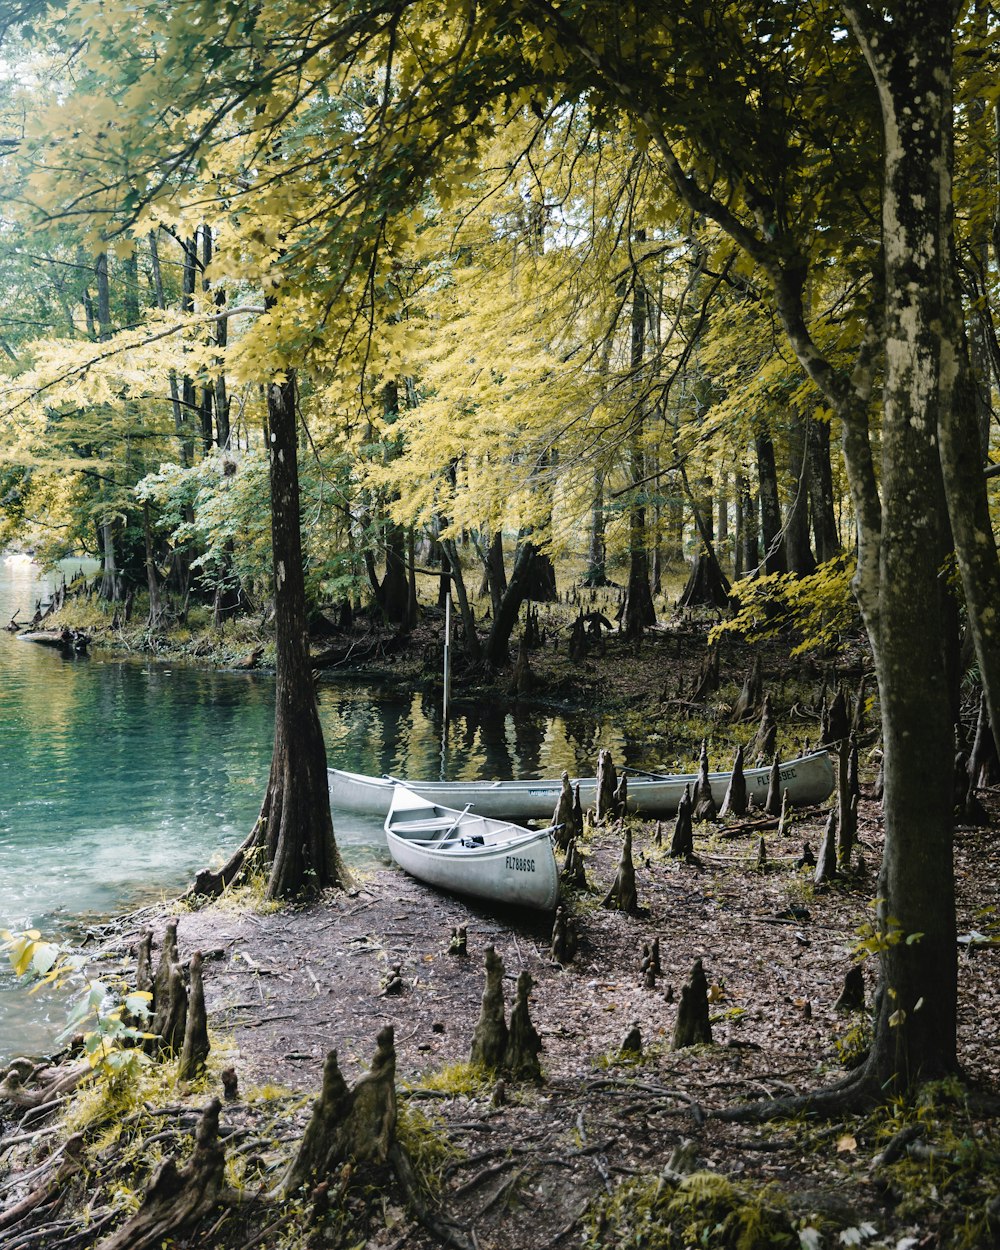 Dos canoas grises junto a árboles verdes